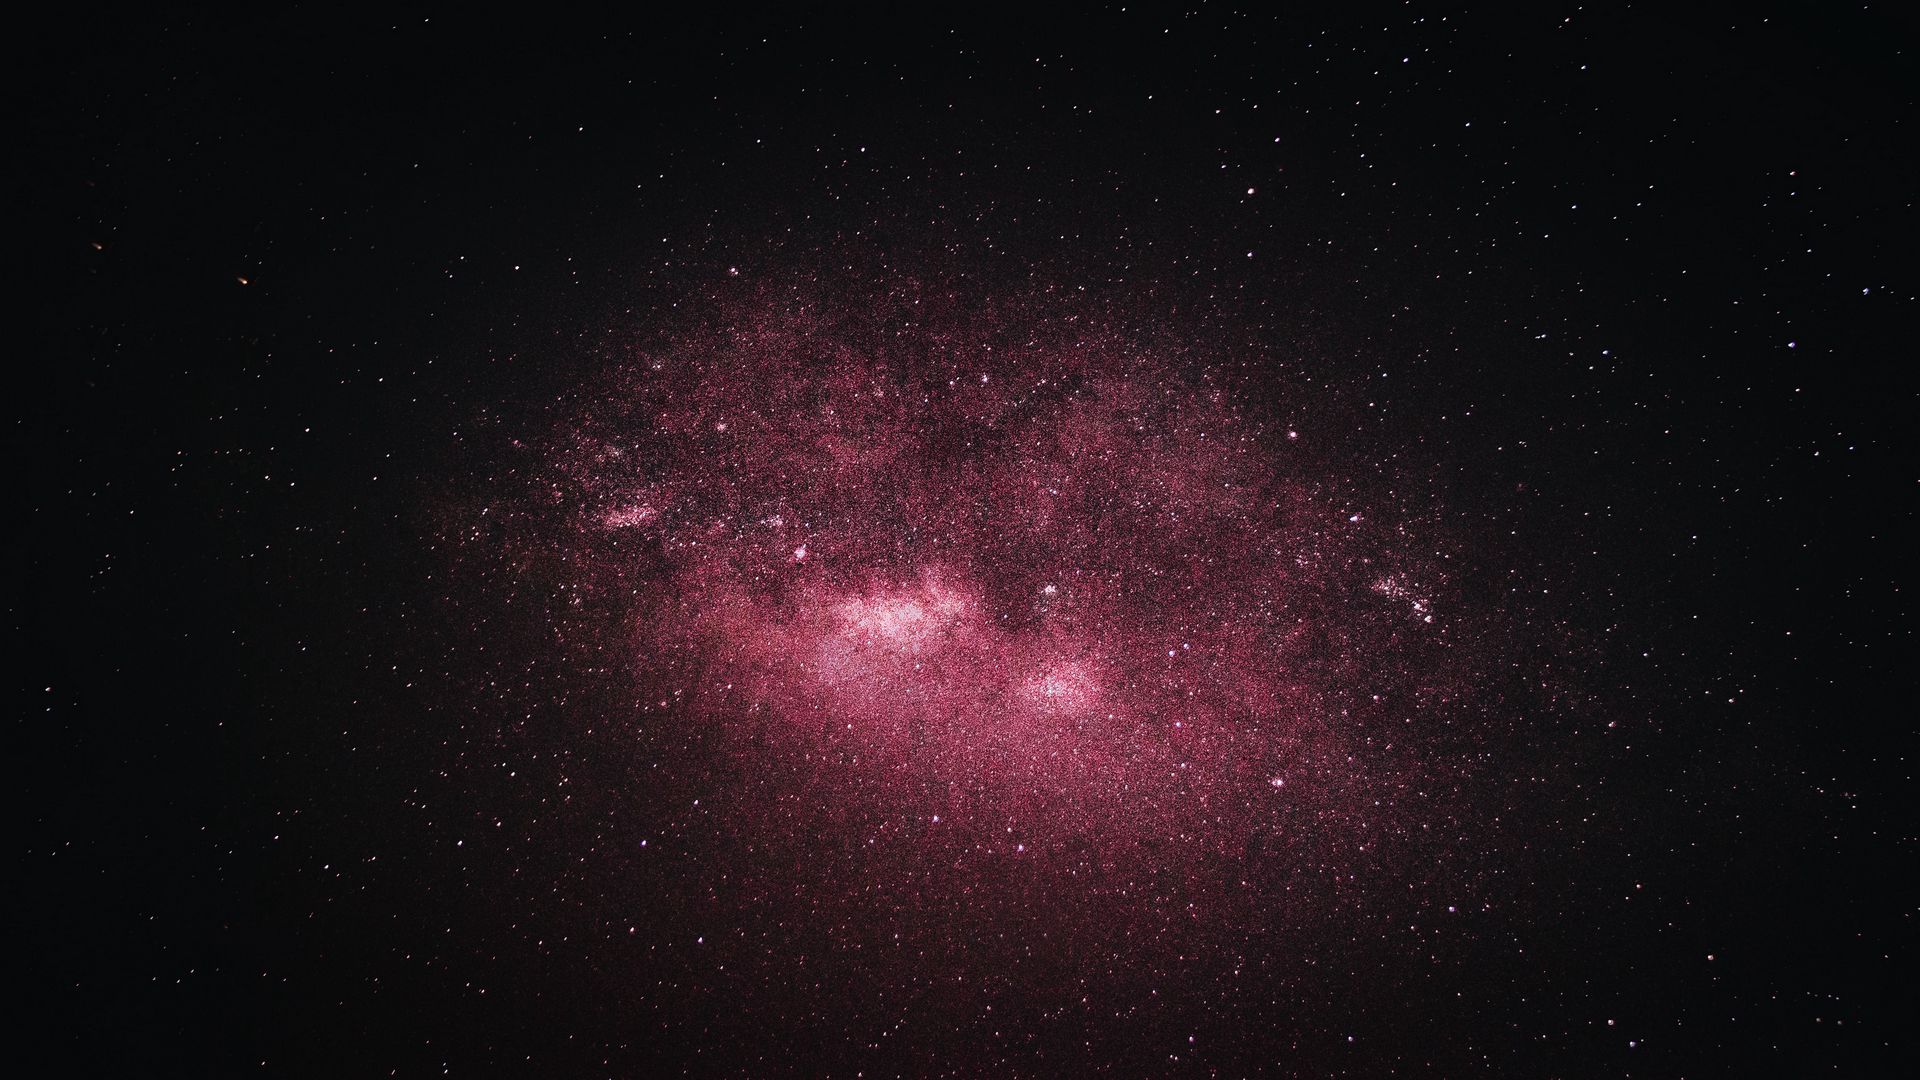 Download wallpaper 1920x1080 stars, nebula, galaxy, space, dark full hd ...